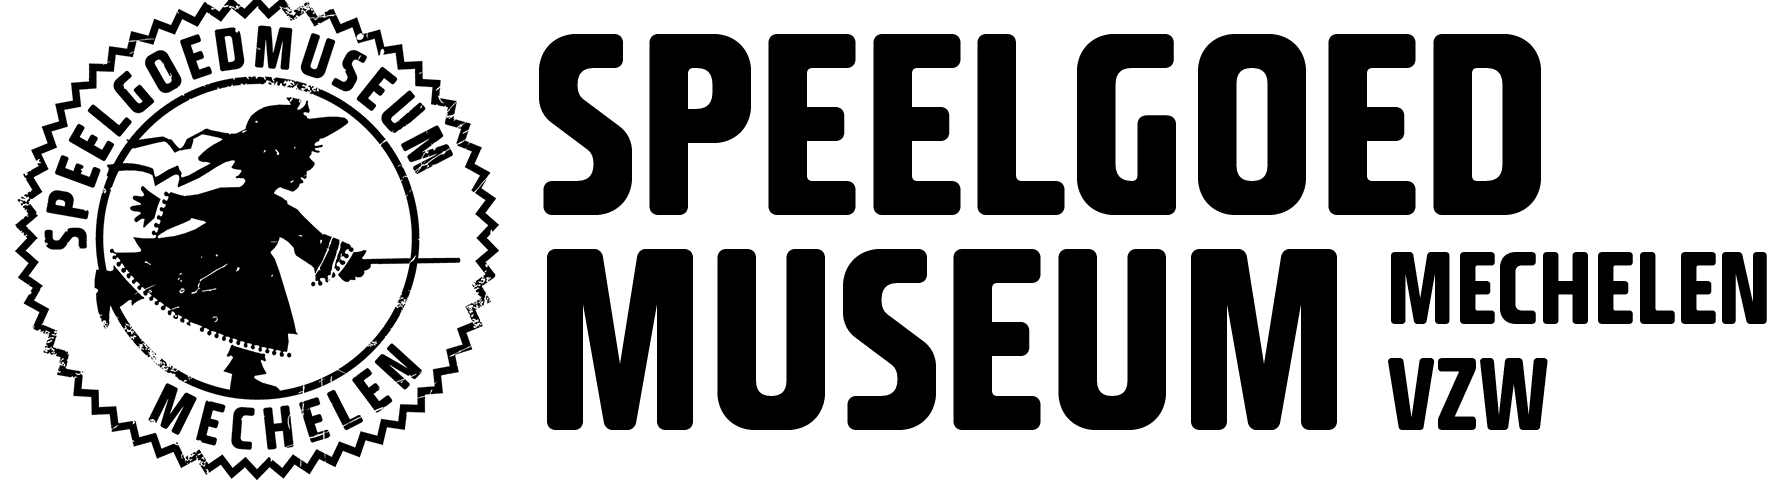 Huidig Logo Speelgoedmuseum Mechelen